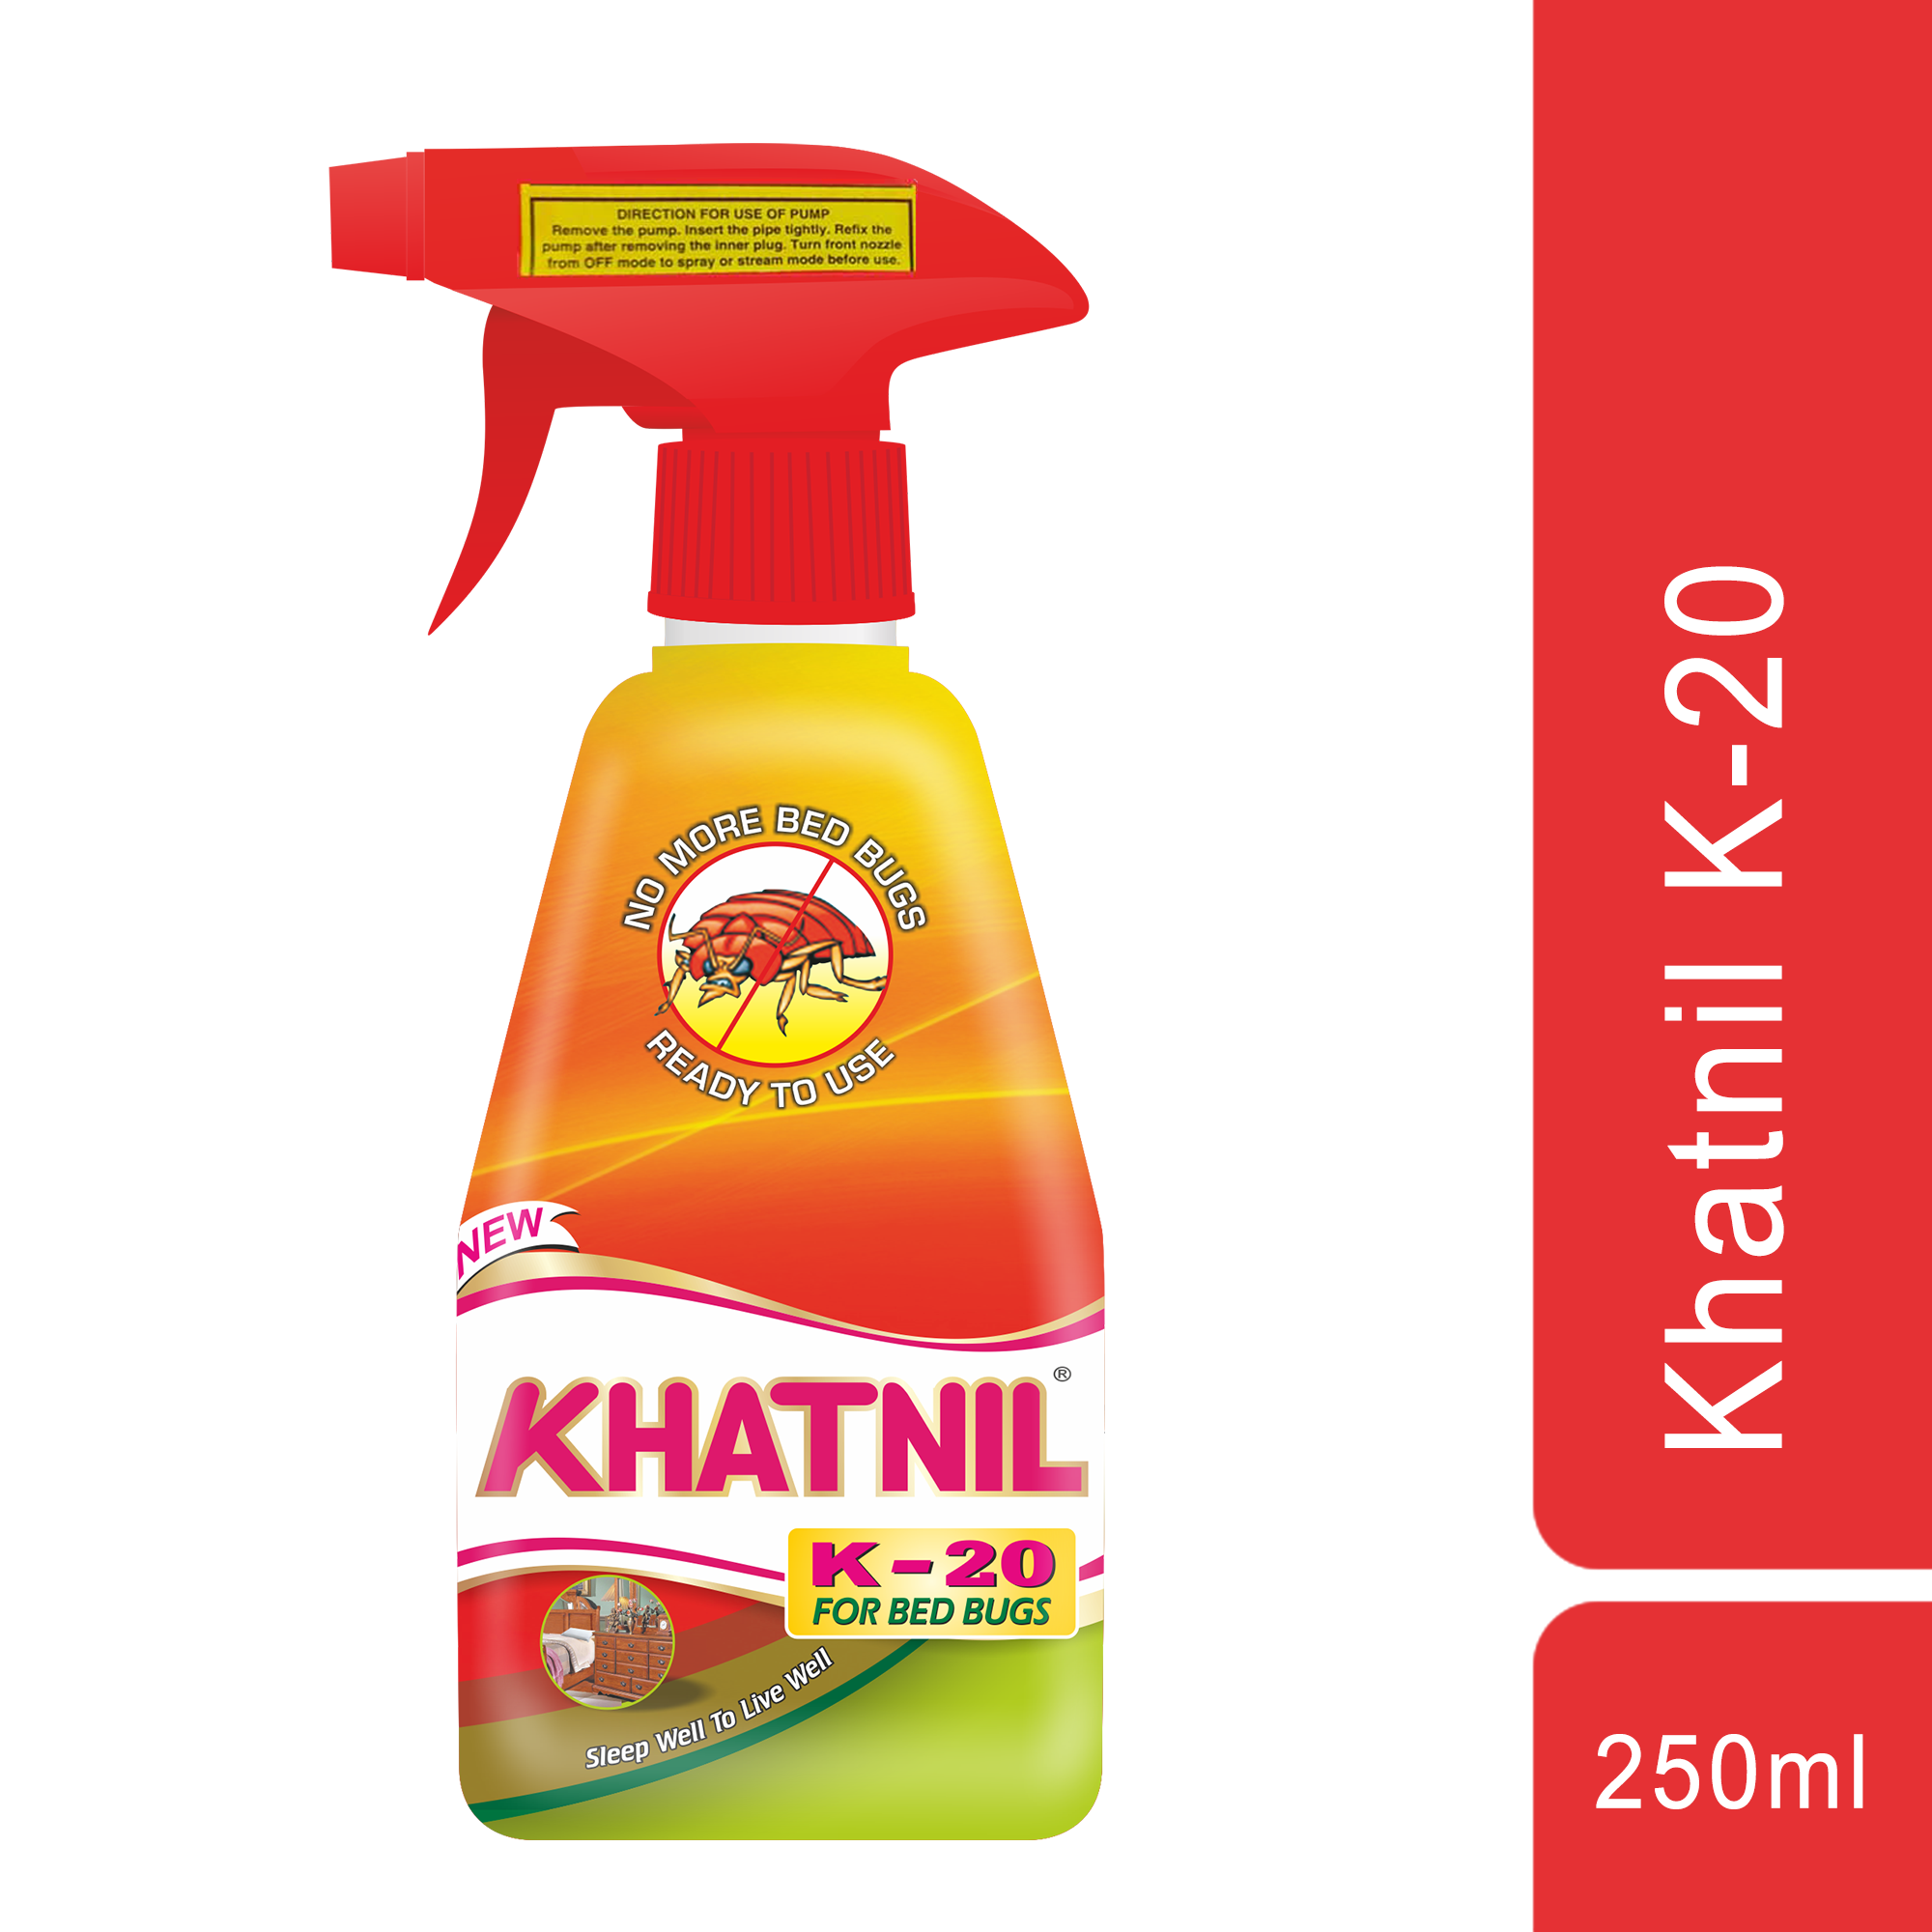 Khatnil K-20 For Bed Bugs 250ml